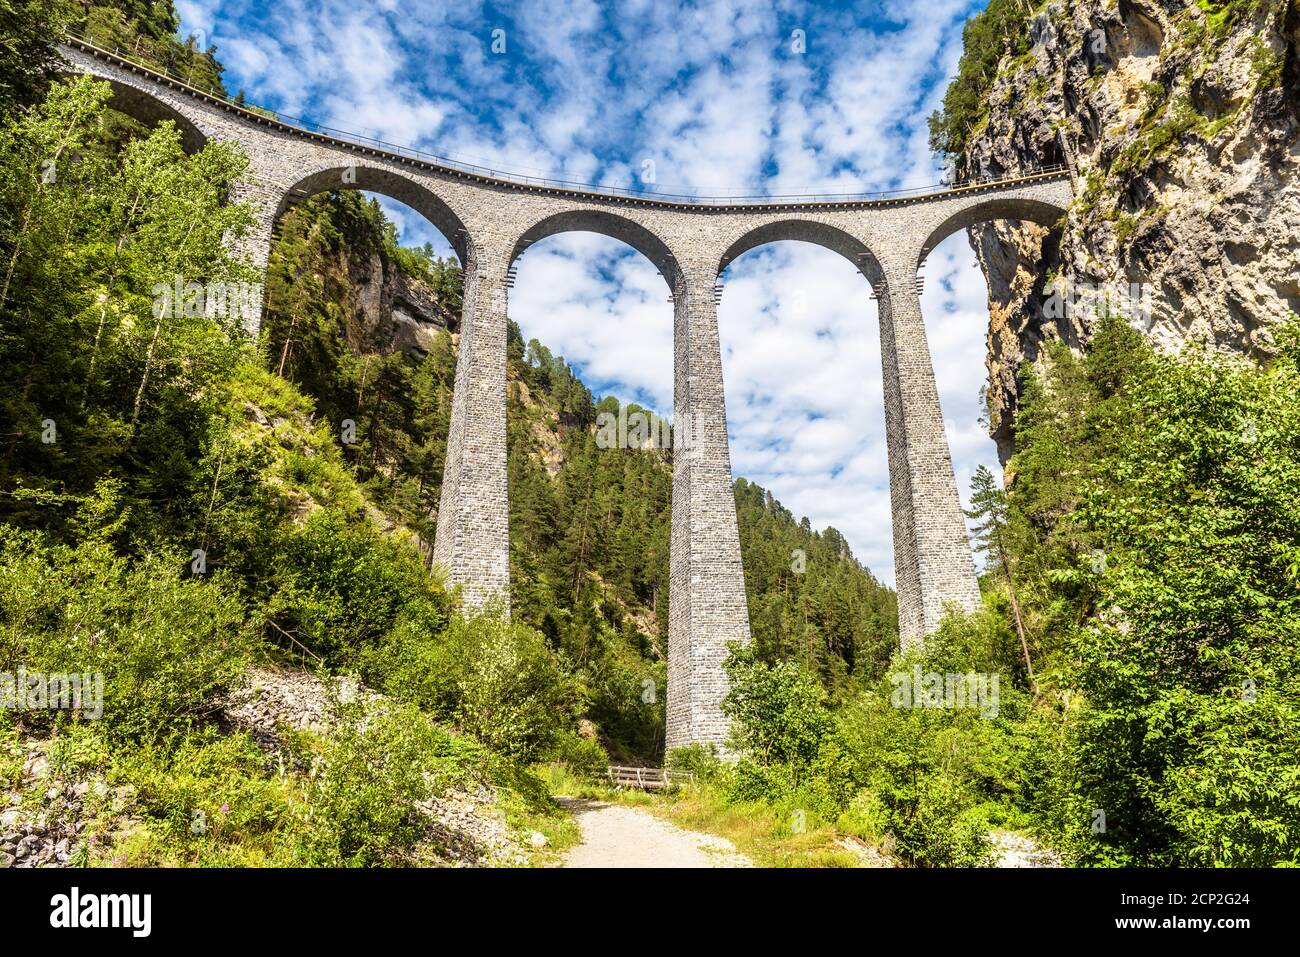 Landwasser Viadukt in Filisur, Schweiz. Es ist Wahrzeichen der Schweizer Alpen. Landschaftlich schöner Blick auf die hohe Eisenbahnbrücke über die Schlucht in den Bergen, alpine Landschaft Stockfoto